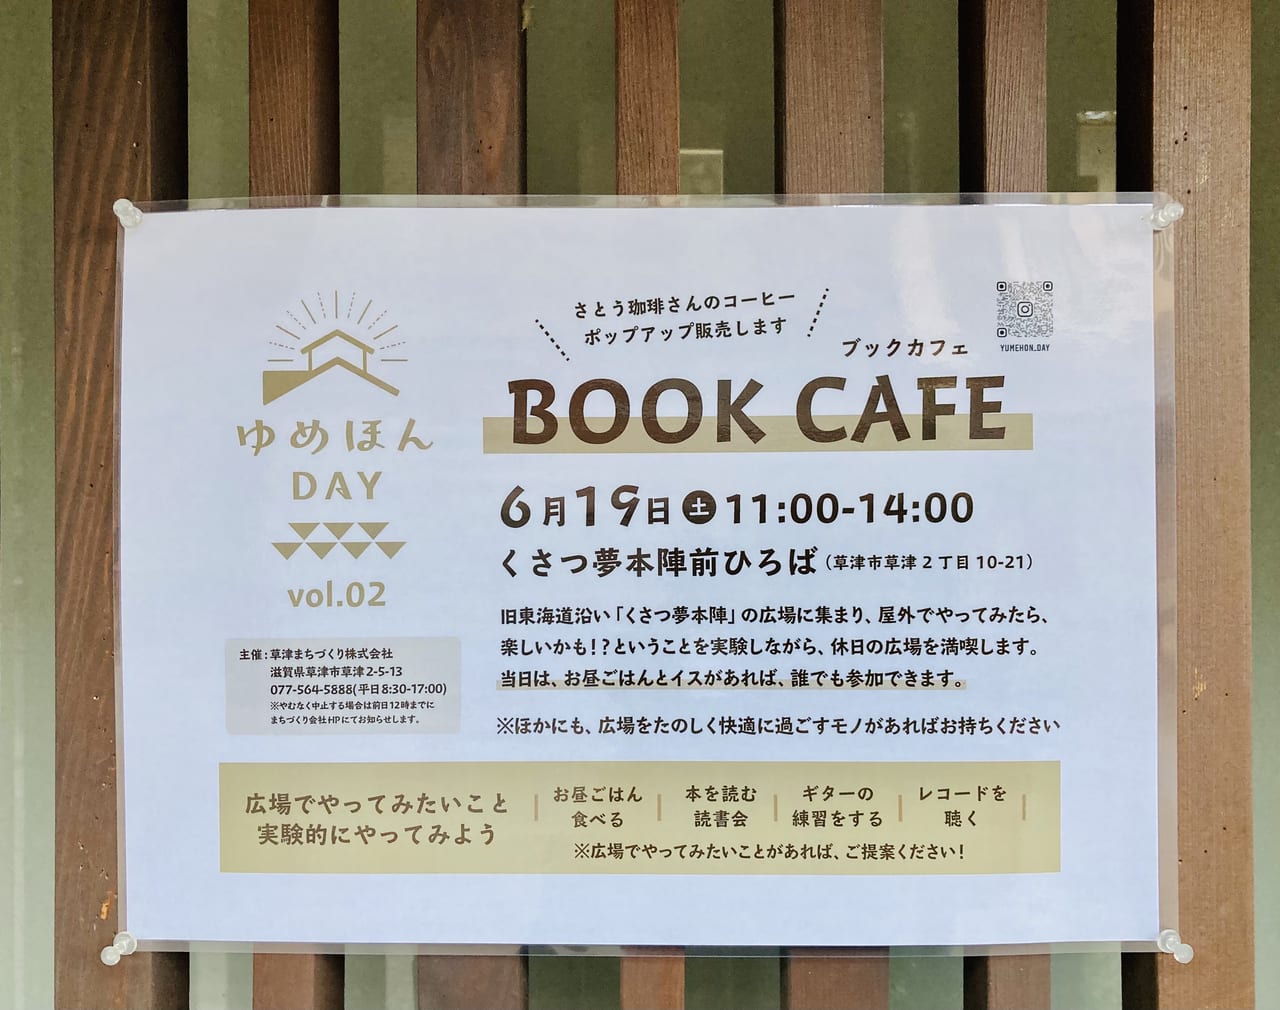 草津市 くさつ夢本陣前ひろばで Book Cafe 開催 21年6月19日11時 14時まで さとう珈琲さんのコーヒーもポップアップ販売します 号外net 草津 栗東